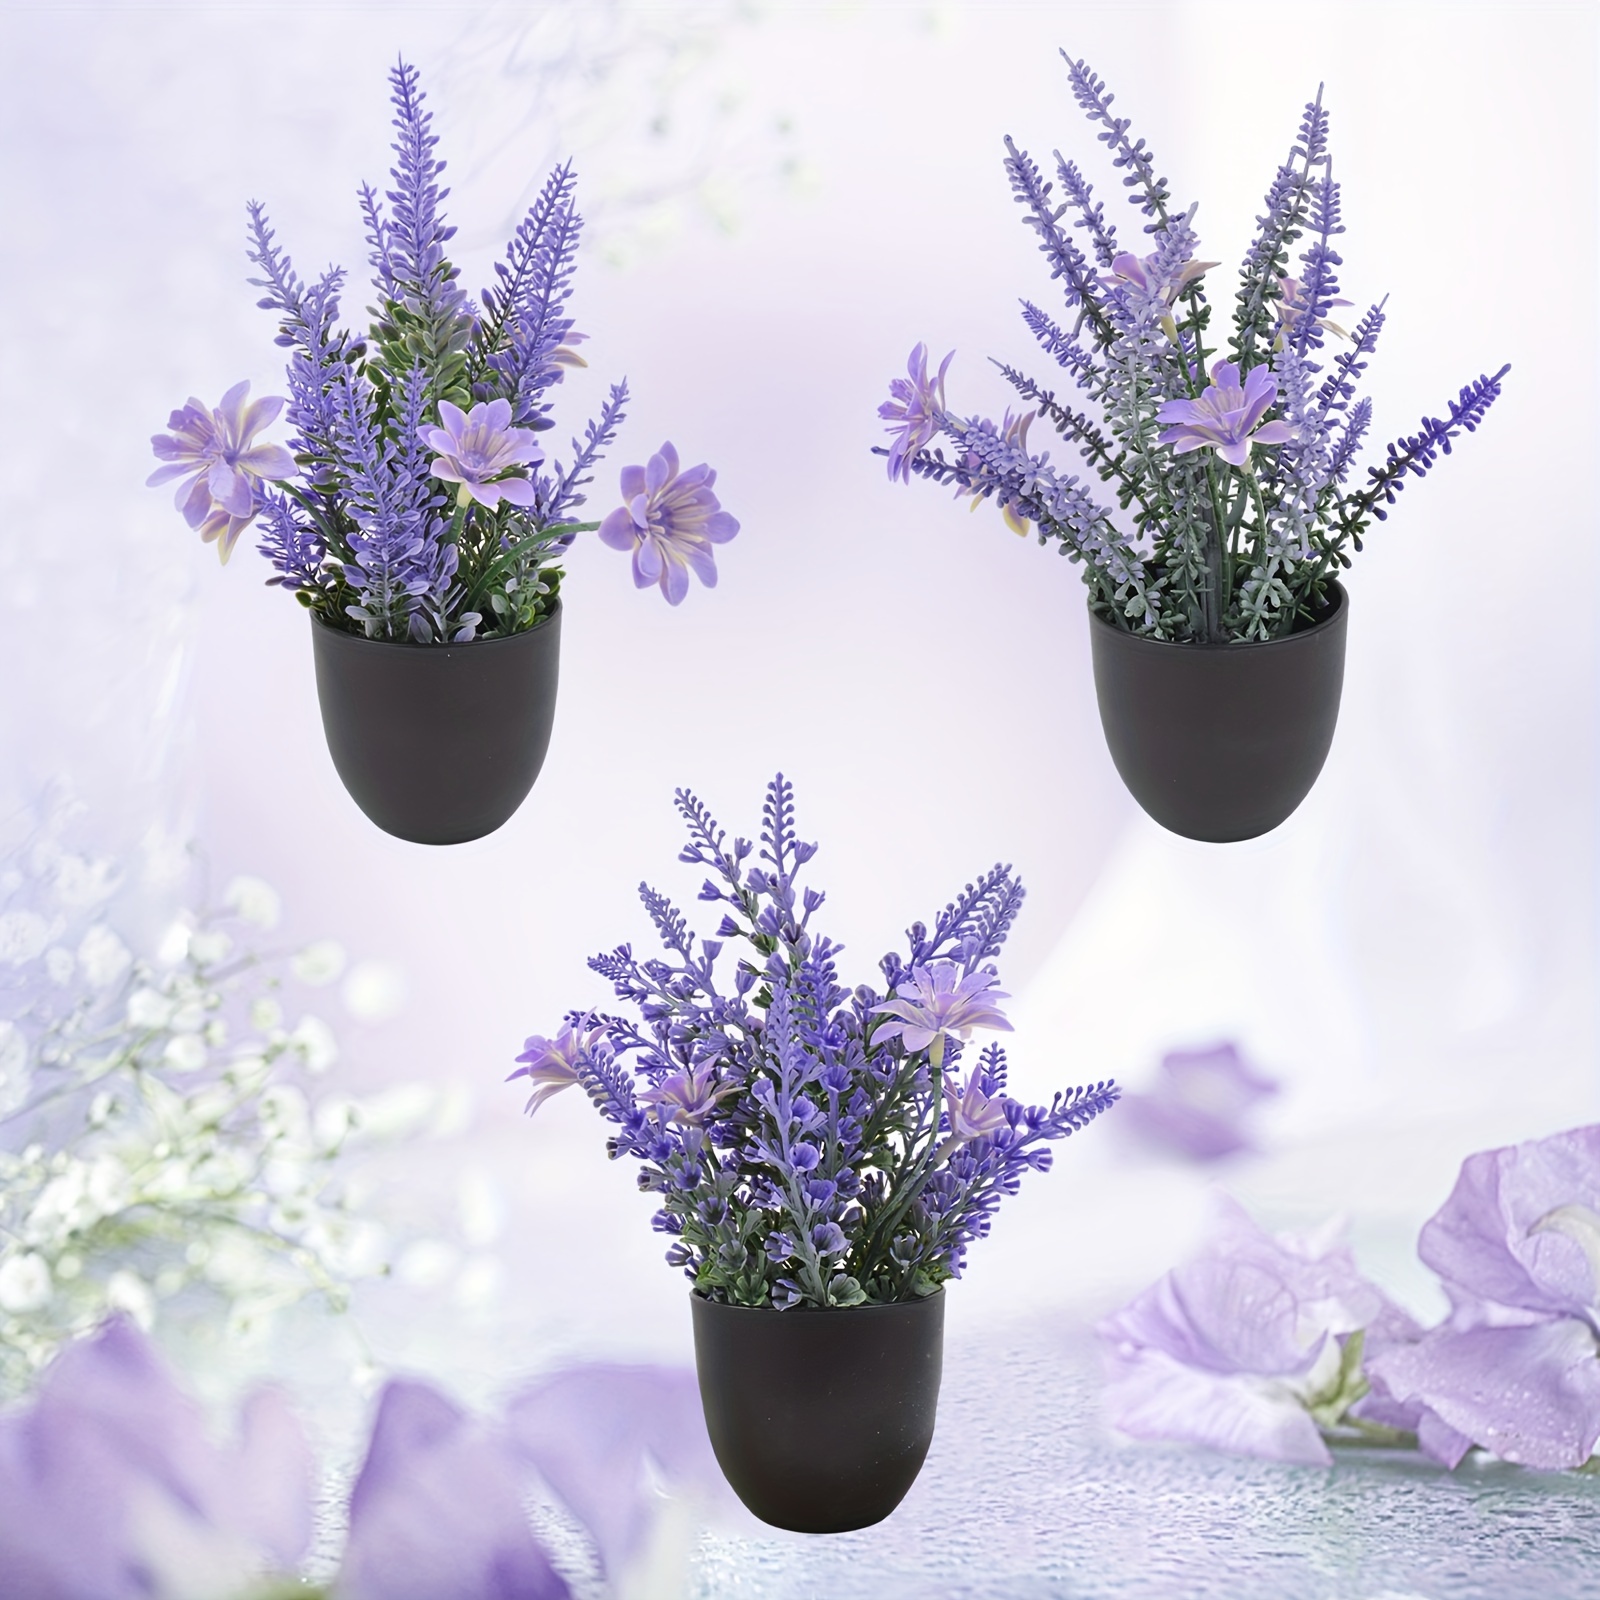 

3pcs Artificial Purple Lavender Bonsai, 20cm/7.87in Plastic Plant Purple Mini Potted Plant, Suitable For Home Table Decoration Small Ornament